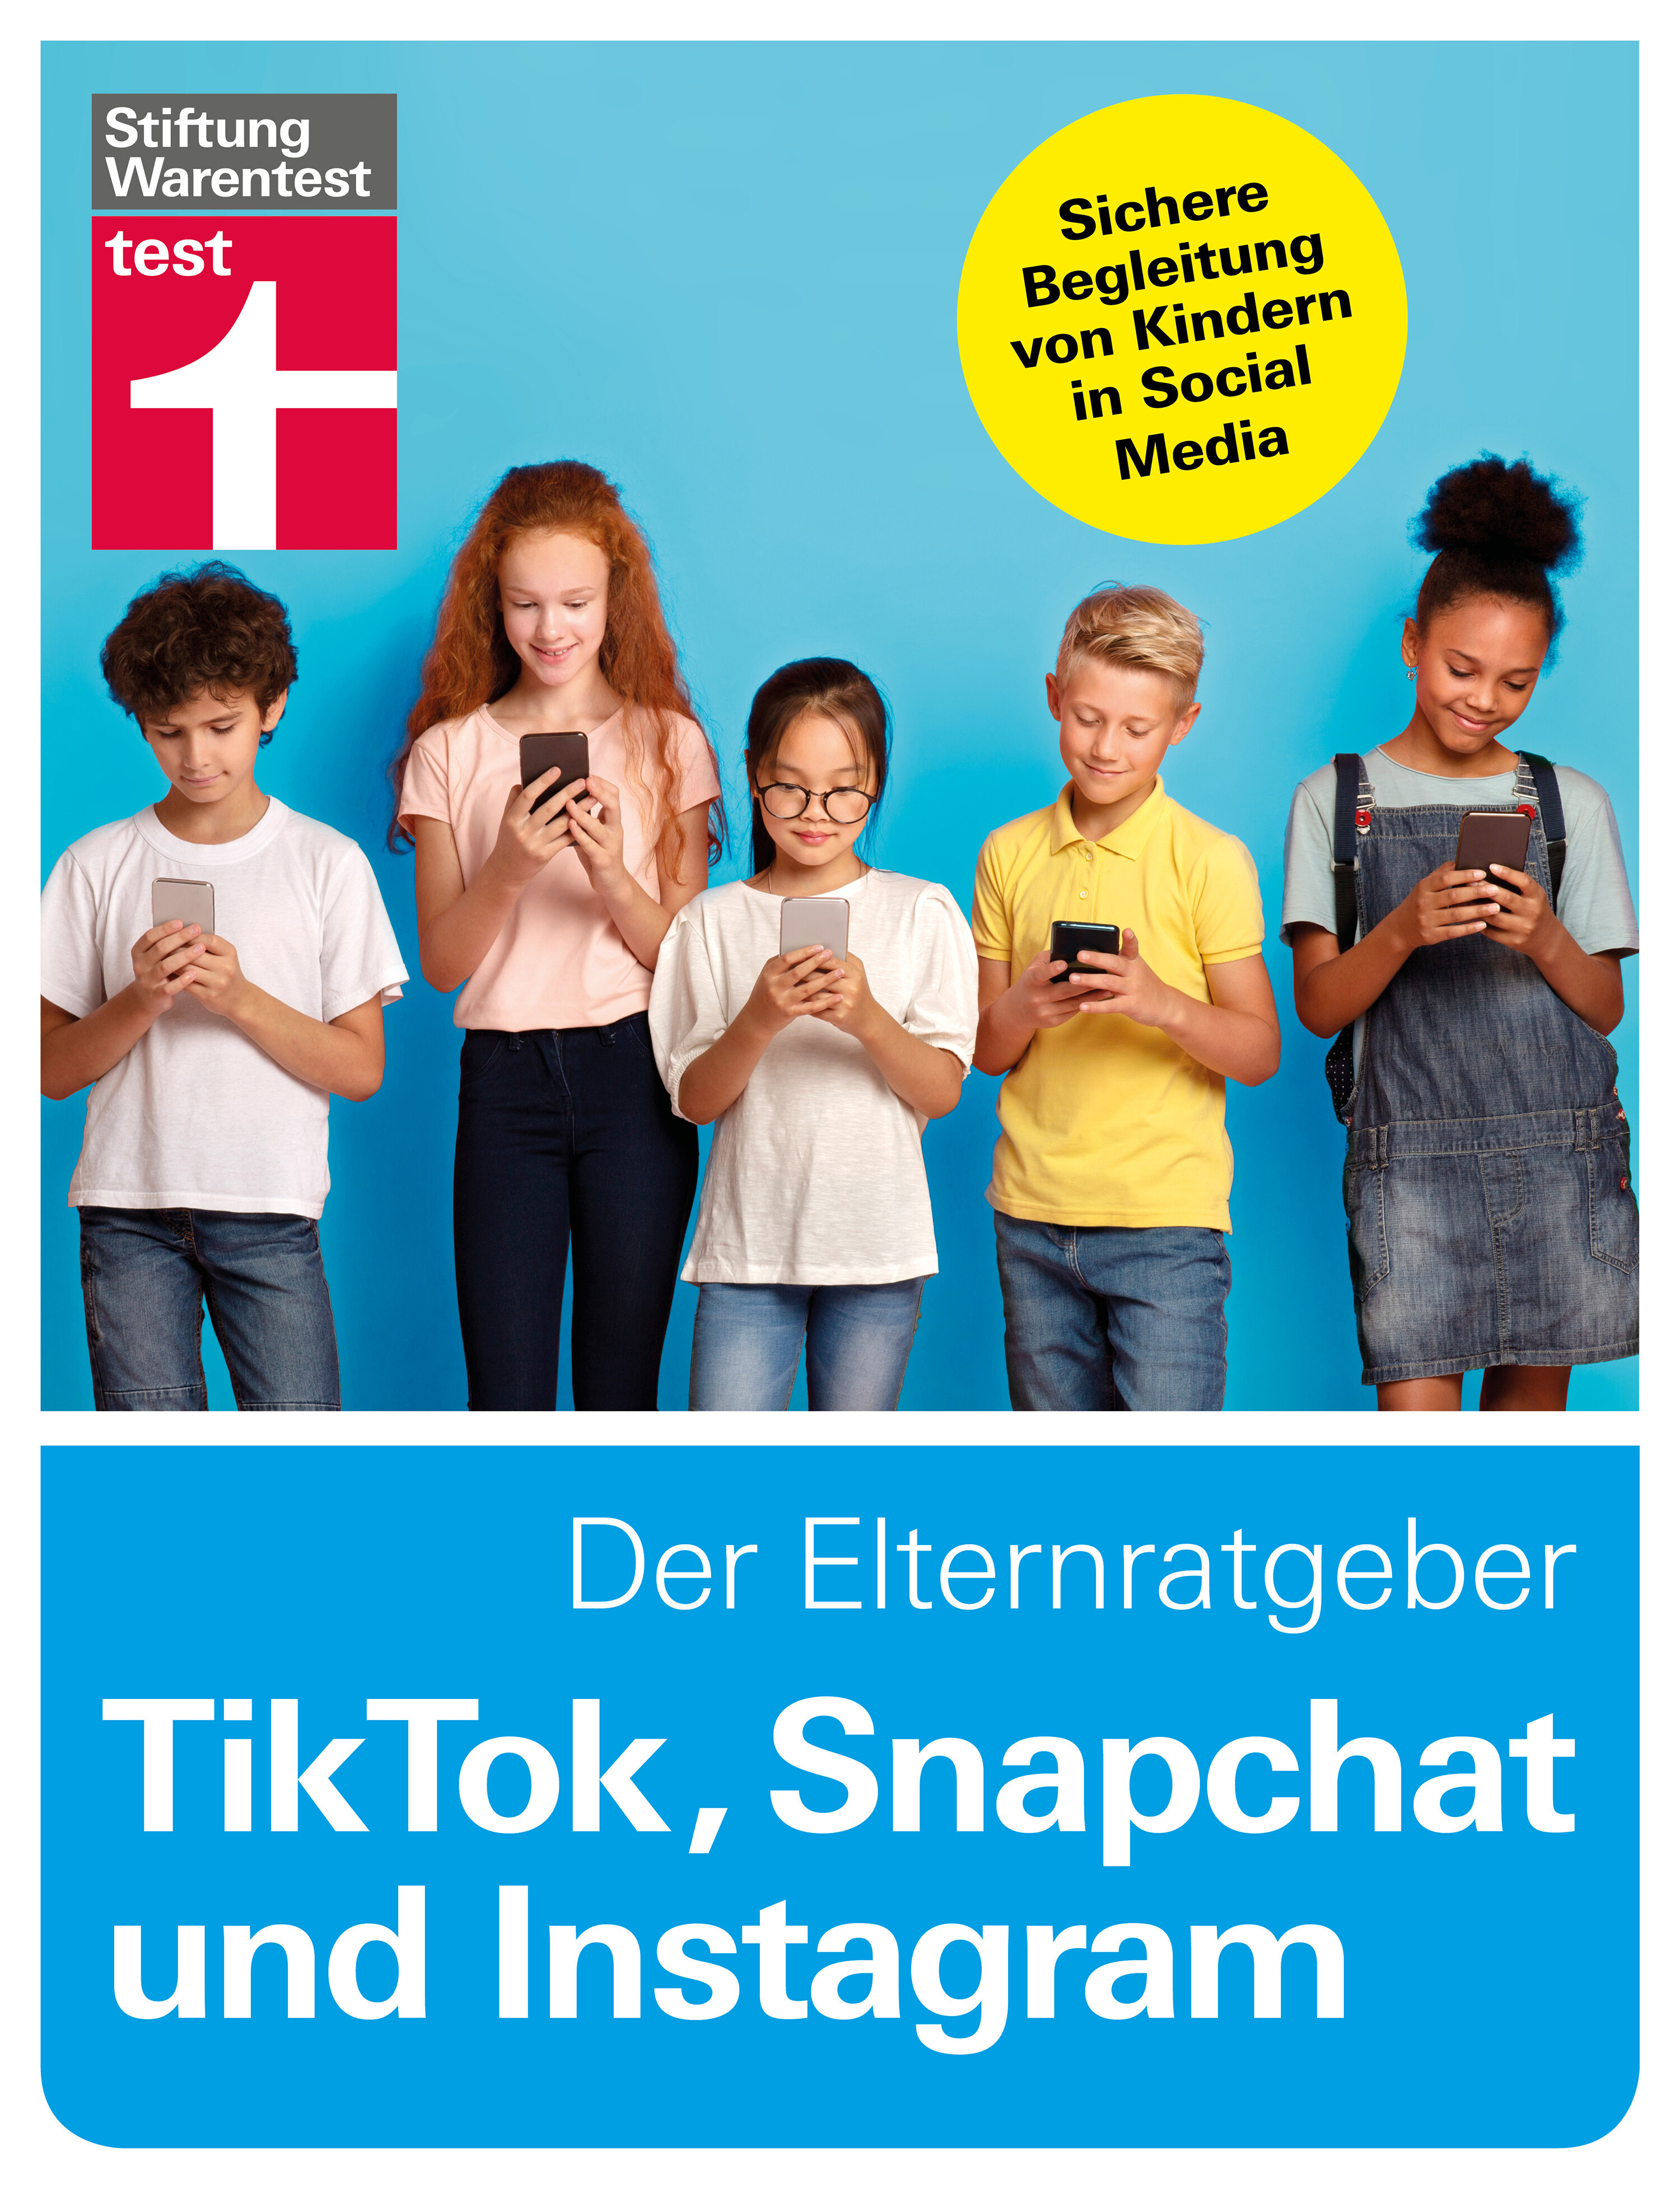 Stiftung Wartentest: Elternratgeber zum Thema TikTok, Snapchat und Instagram